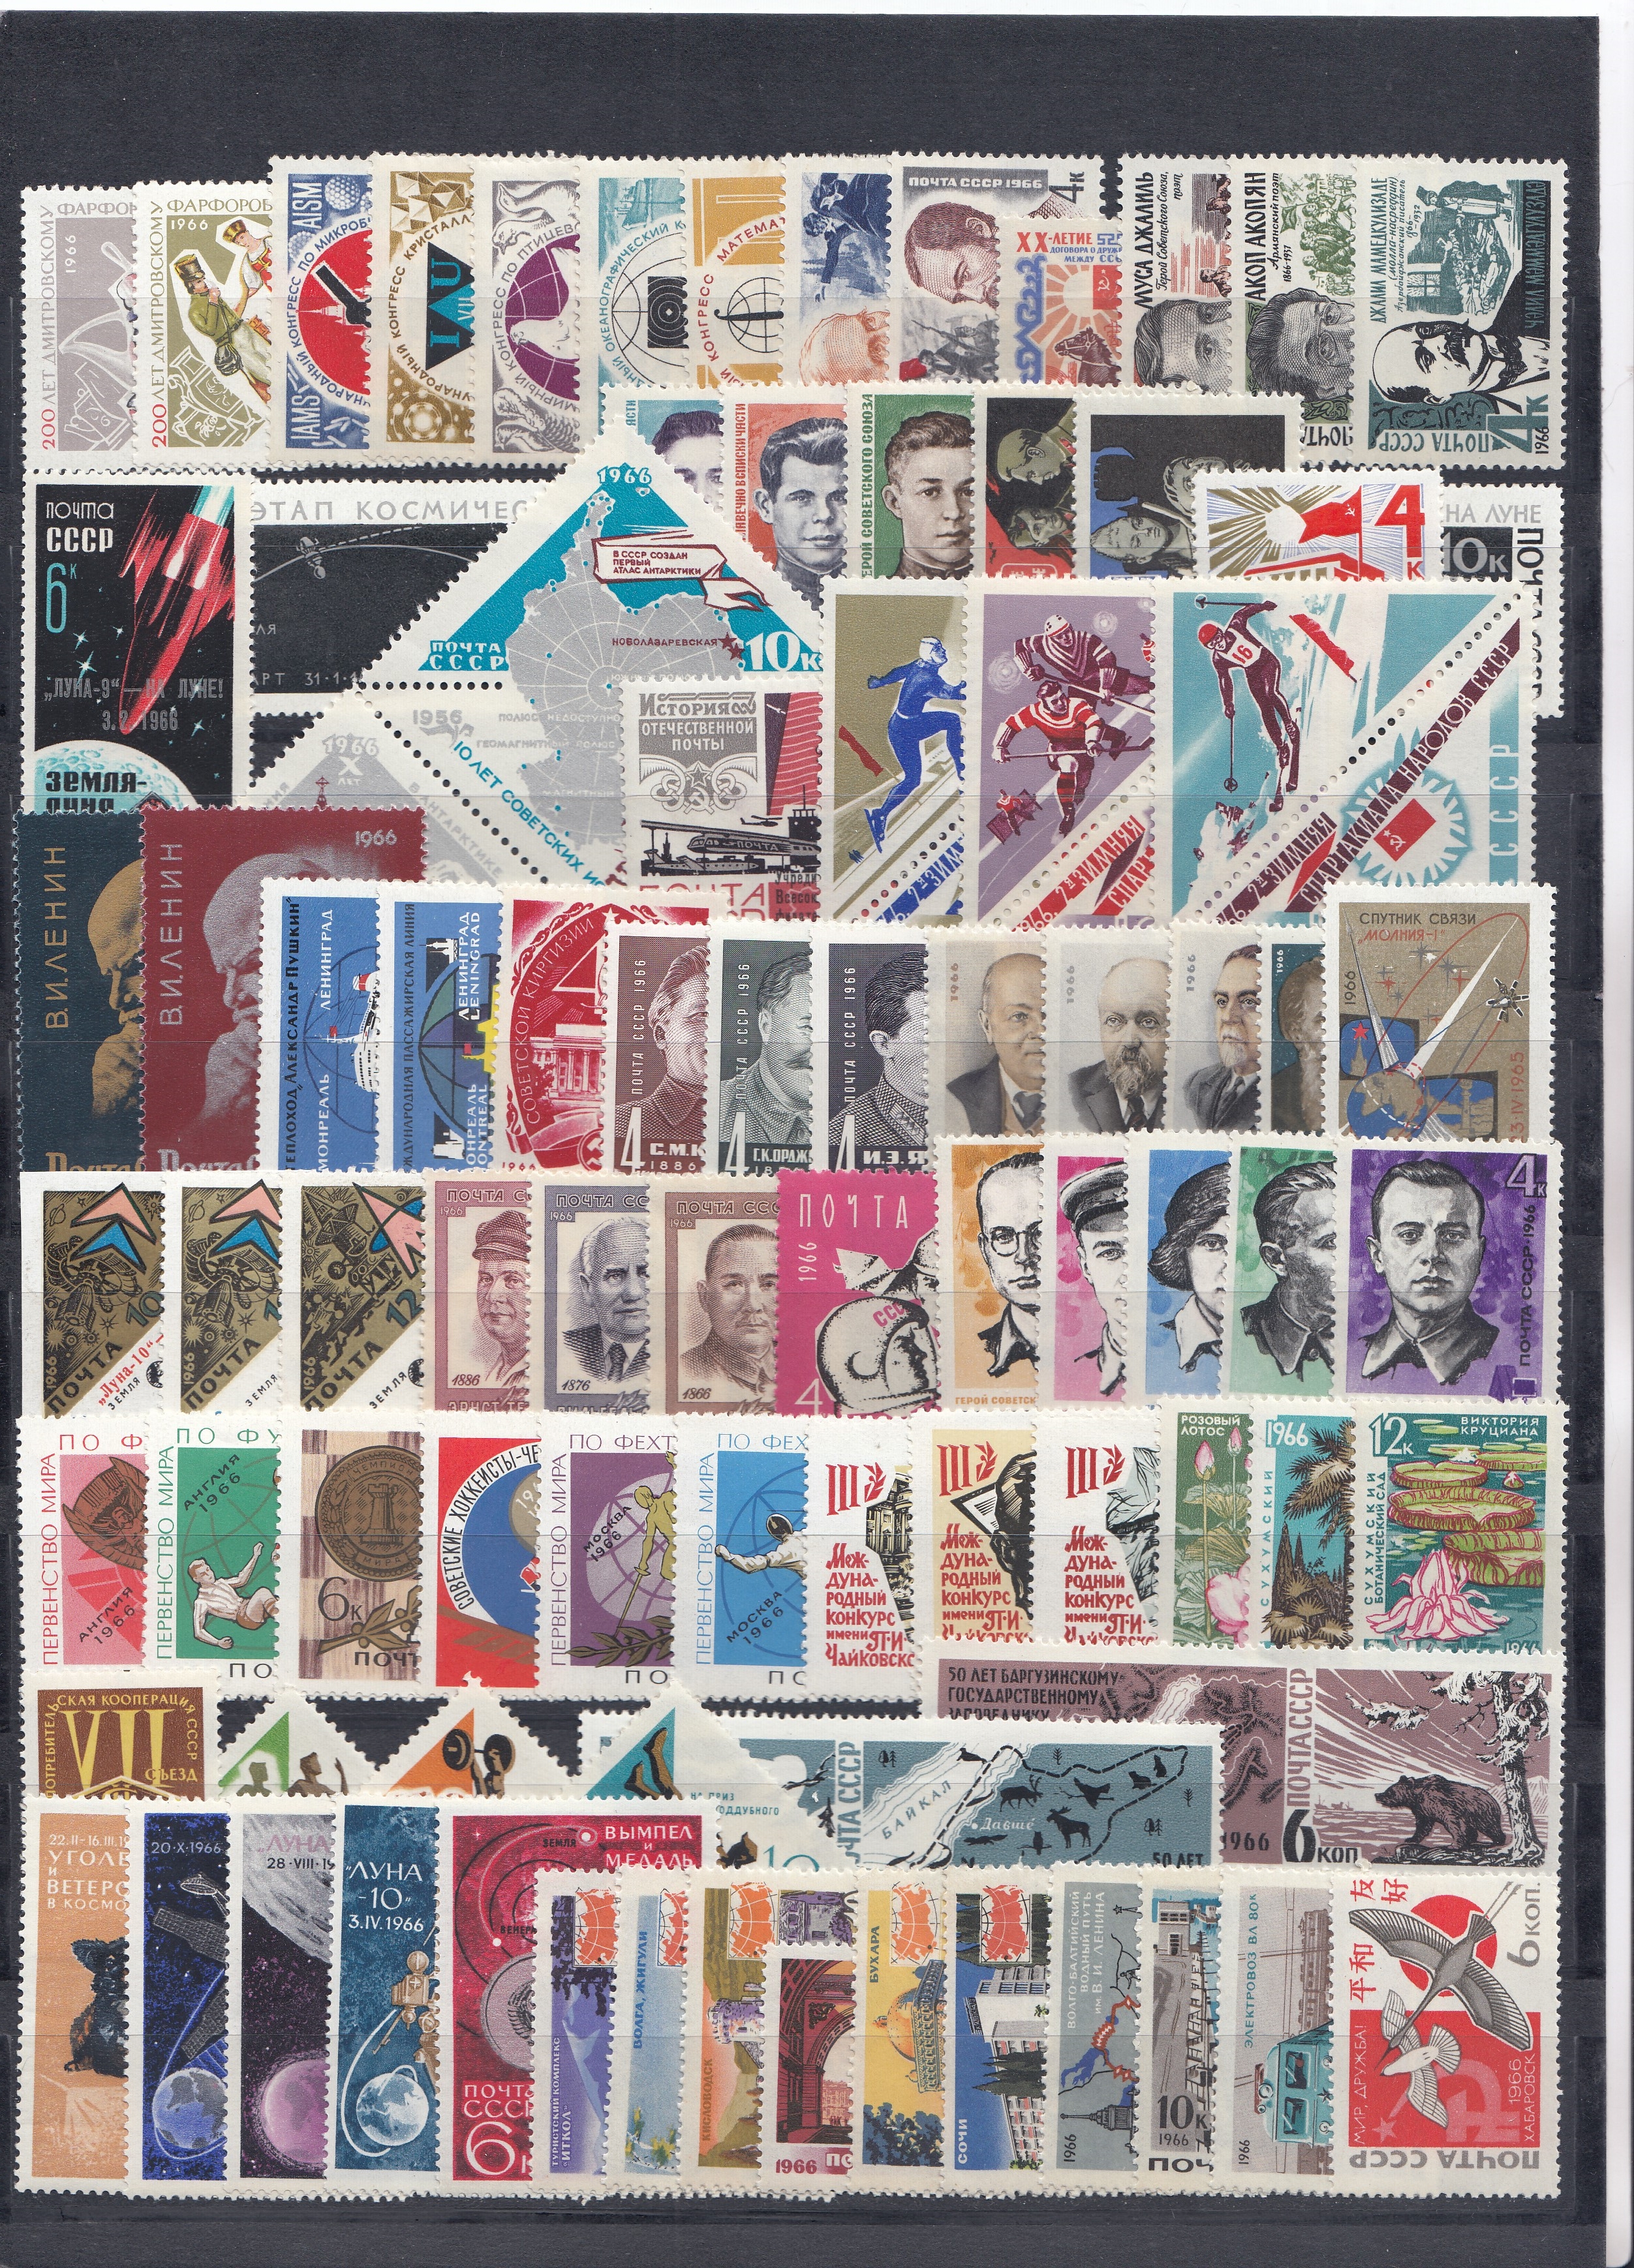 1966 год. Годовой комплект почтовых марок СССР. 151 марка , 3блока.